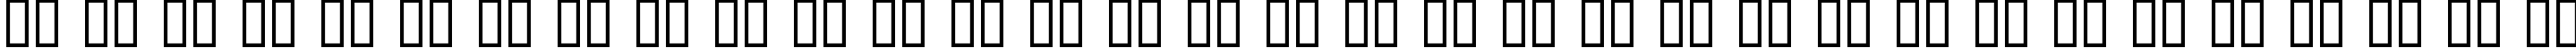 Пример написания русского алфавита шрифтом Soviet Bold